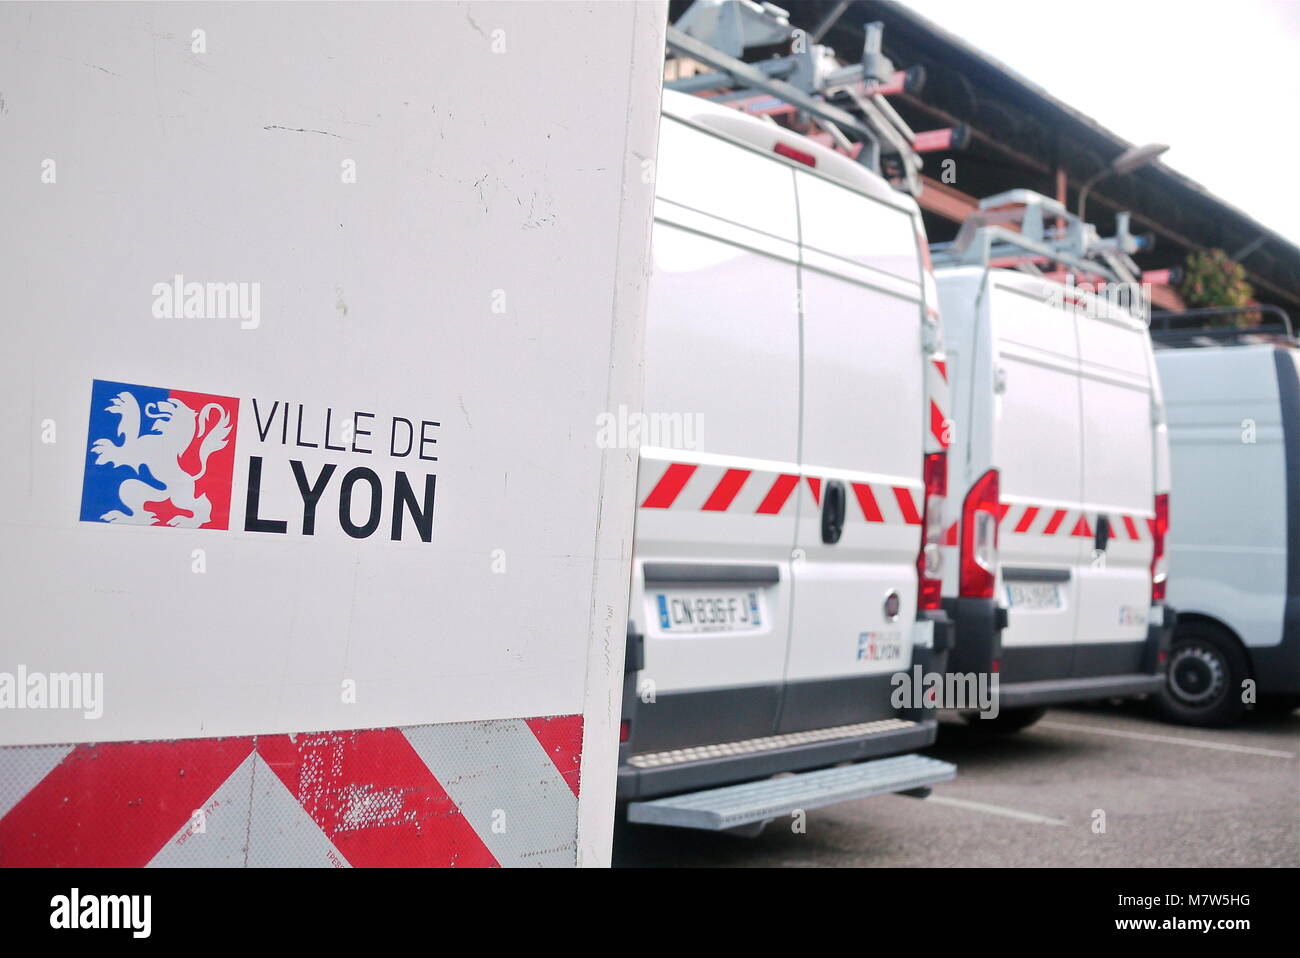 Vans from "Ville de Lyon" municipal services, Lyon, France Stock Photo -  Alamy